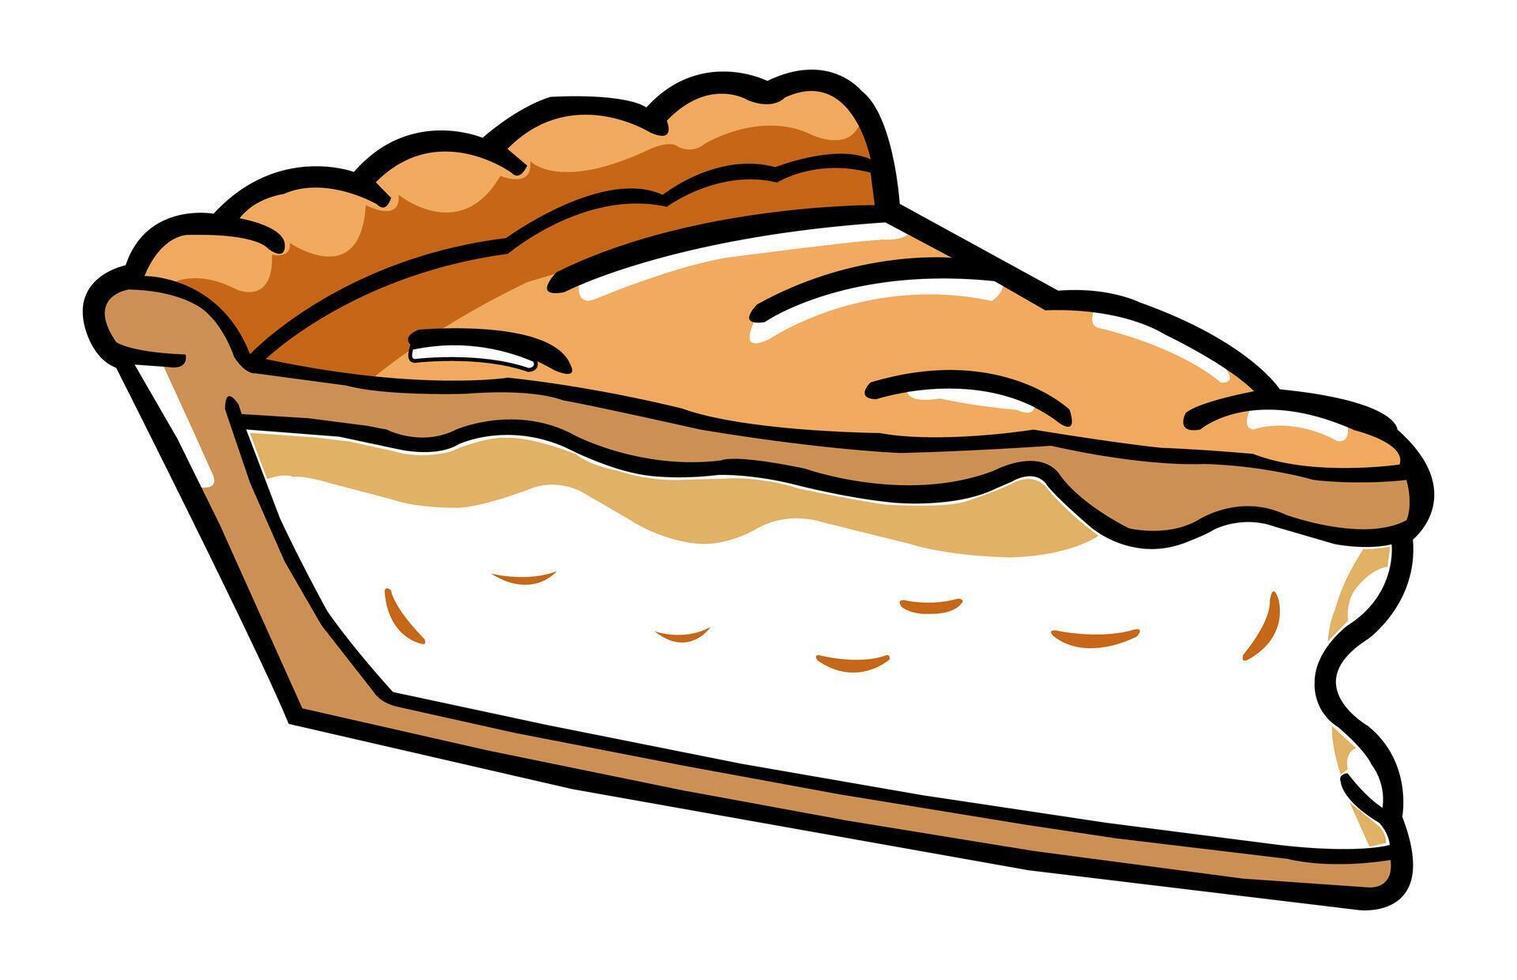 maçã torta fatia plano vetor ícone ilustração, fofa fatia do maçã torta.